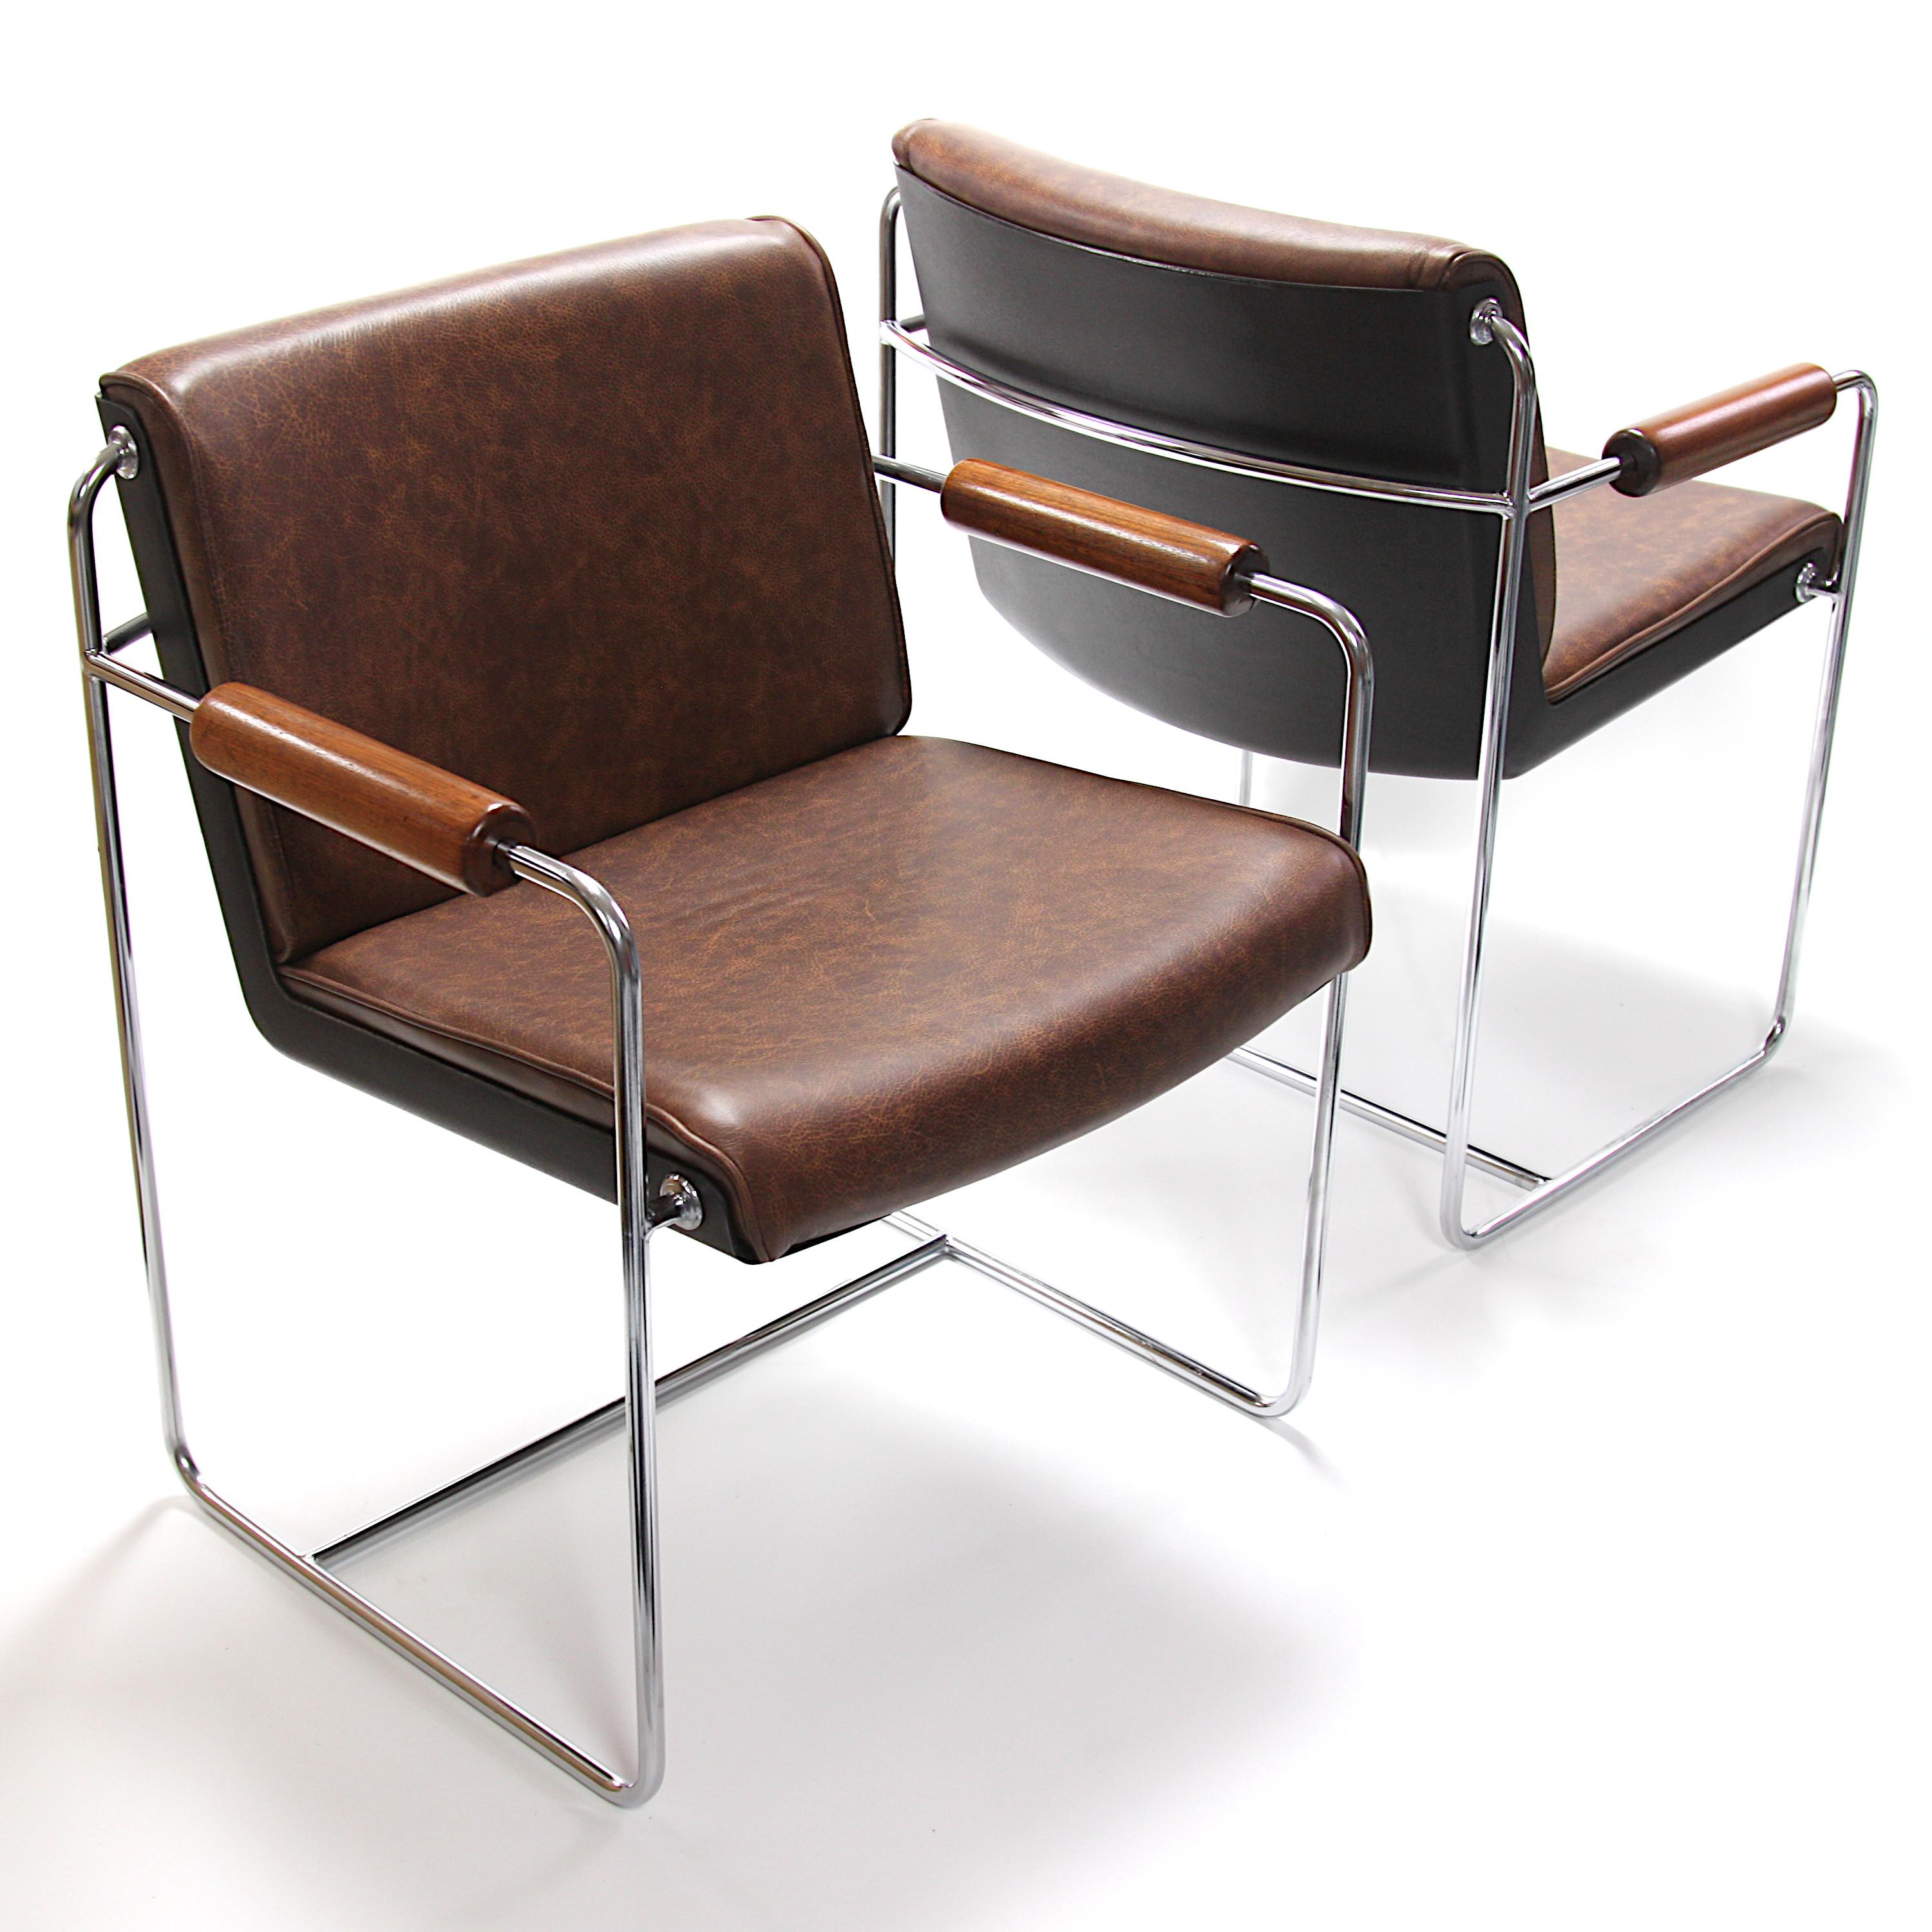 Wunderschönes Paar seltener AFKA-Gäste-/Seitenstühle aus den 1960er Jahren von Krueger Metallprodukte. Die Stühle haben eine weiße Fiberglasschale, ein verchromtes Stahlgestell und Armlehnen aus massivem Walnussholz. Die Stühle wurden frisch